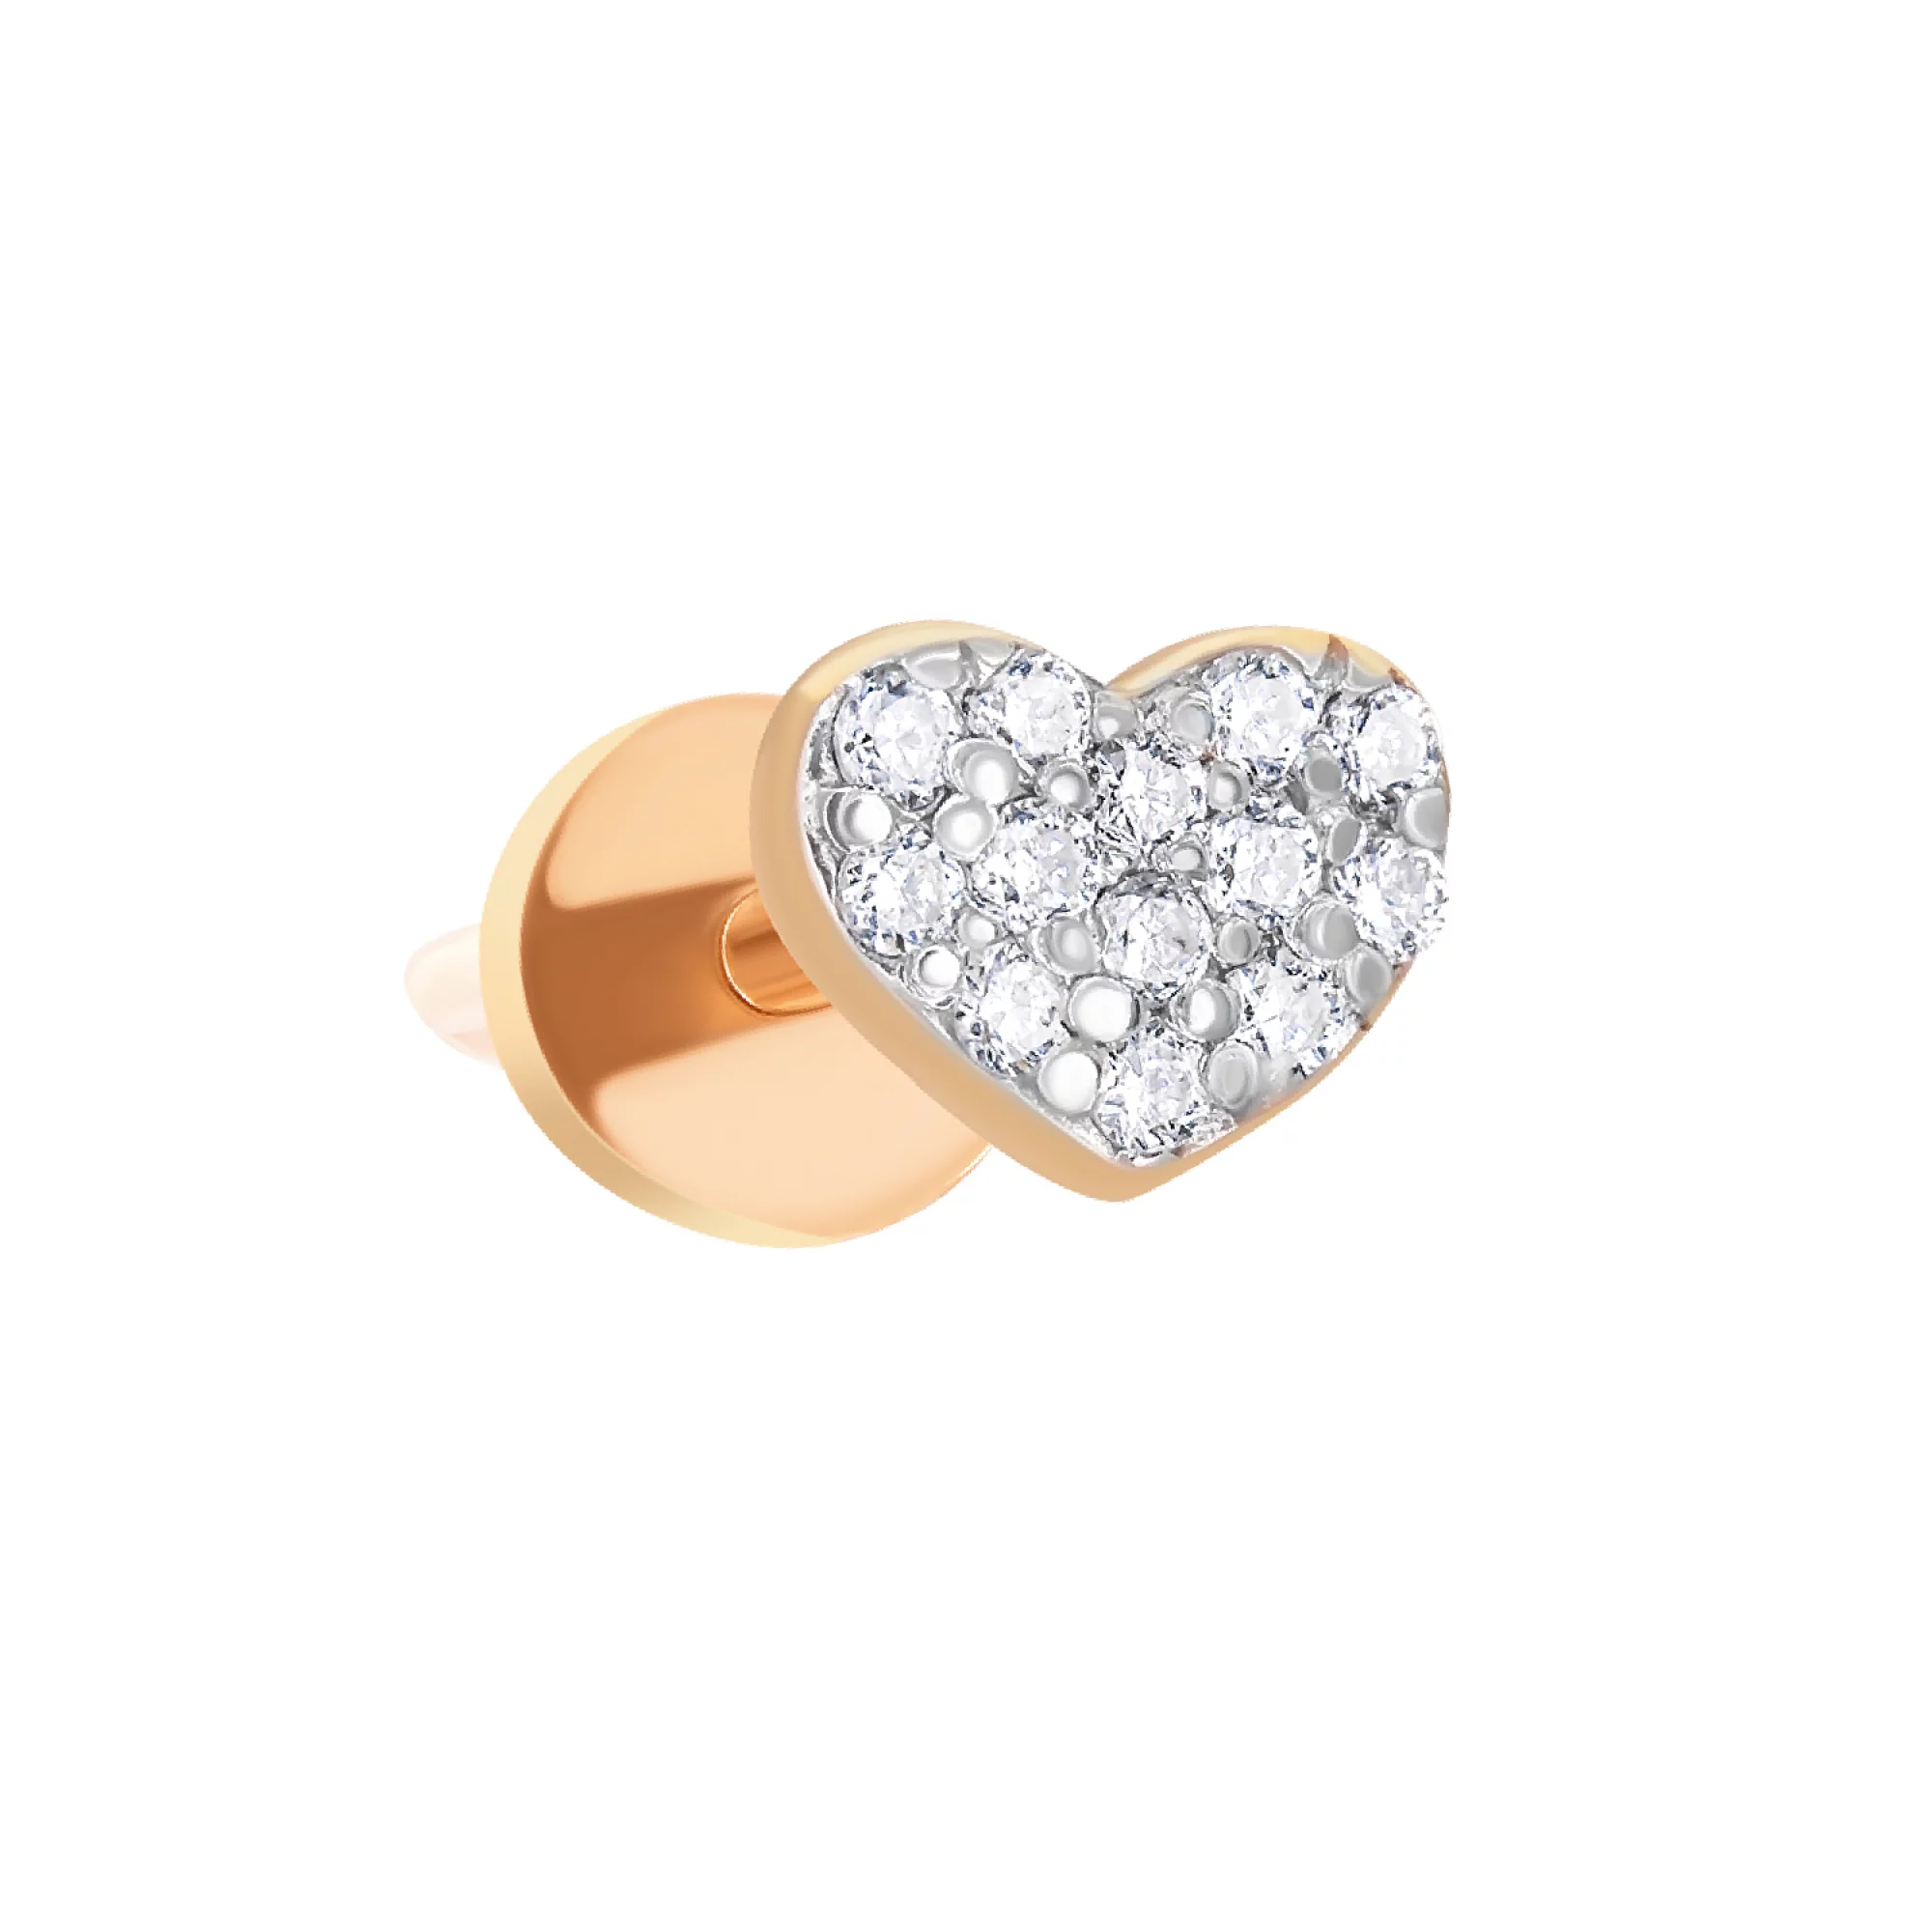 Моно-сережка из красного золота с бриллиантами "Сердце" - 1615569 – изображение 1